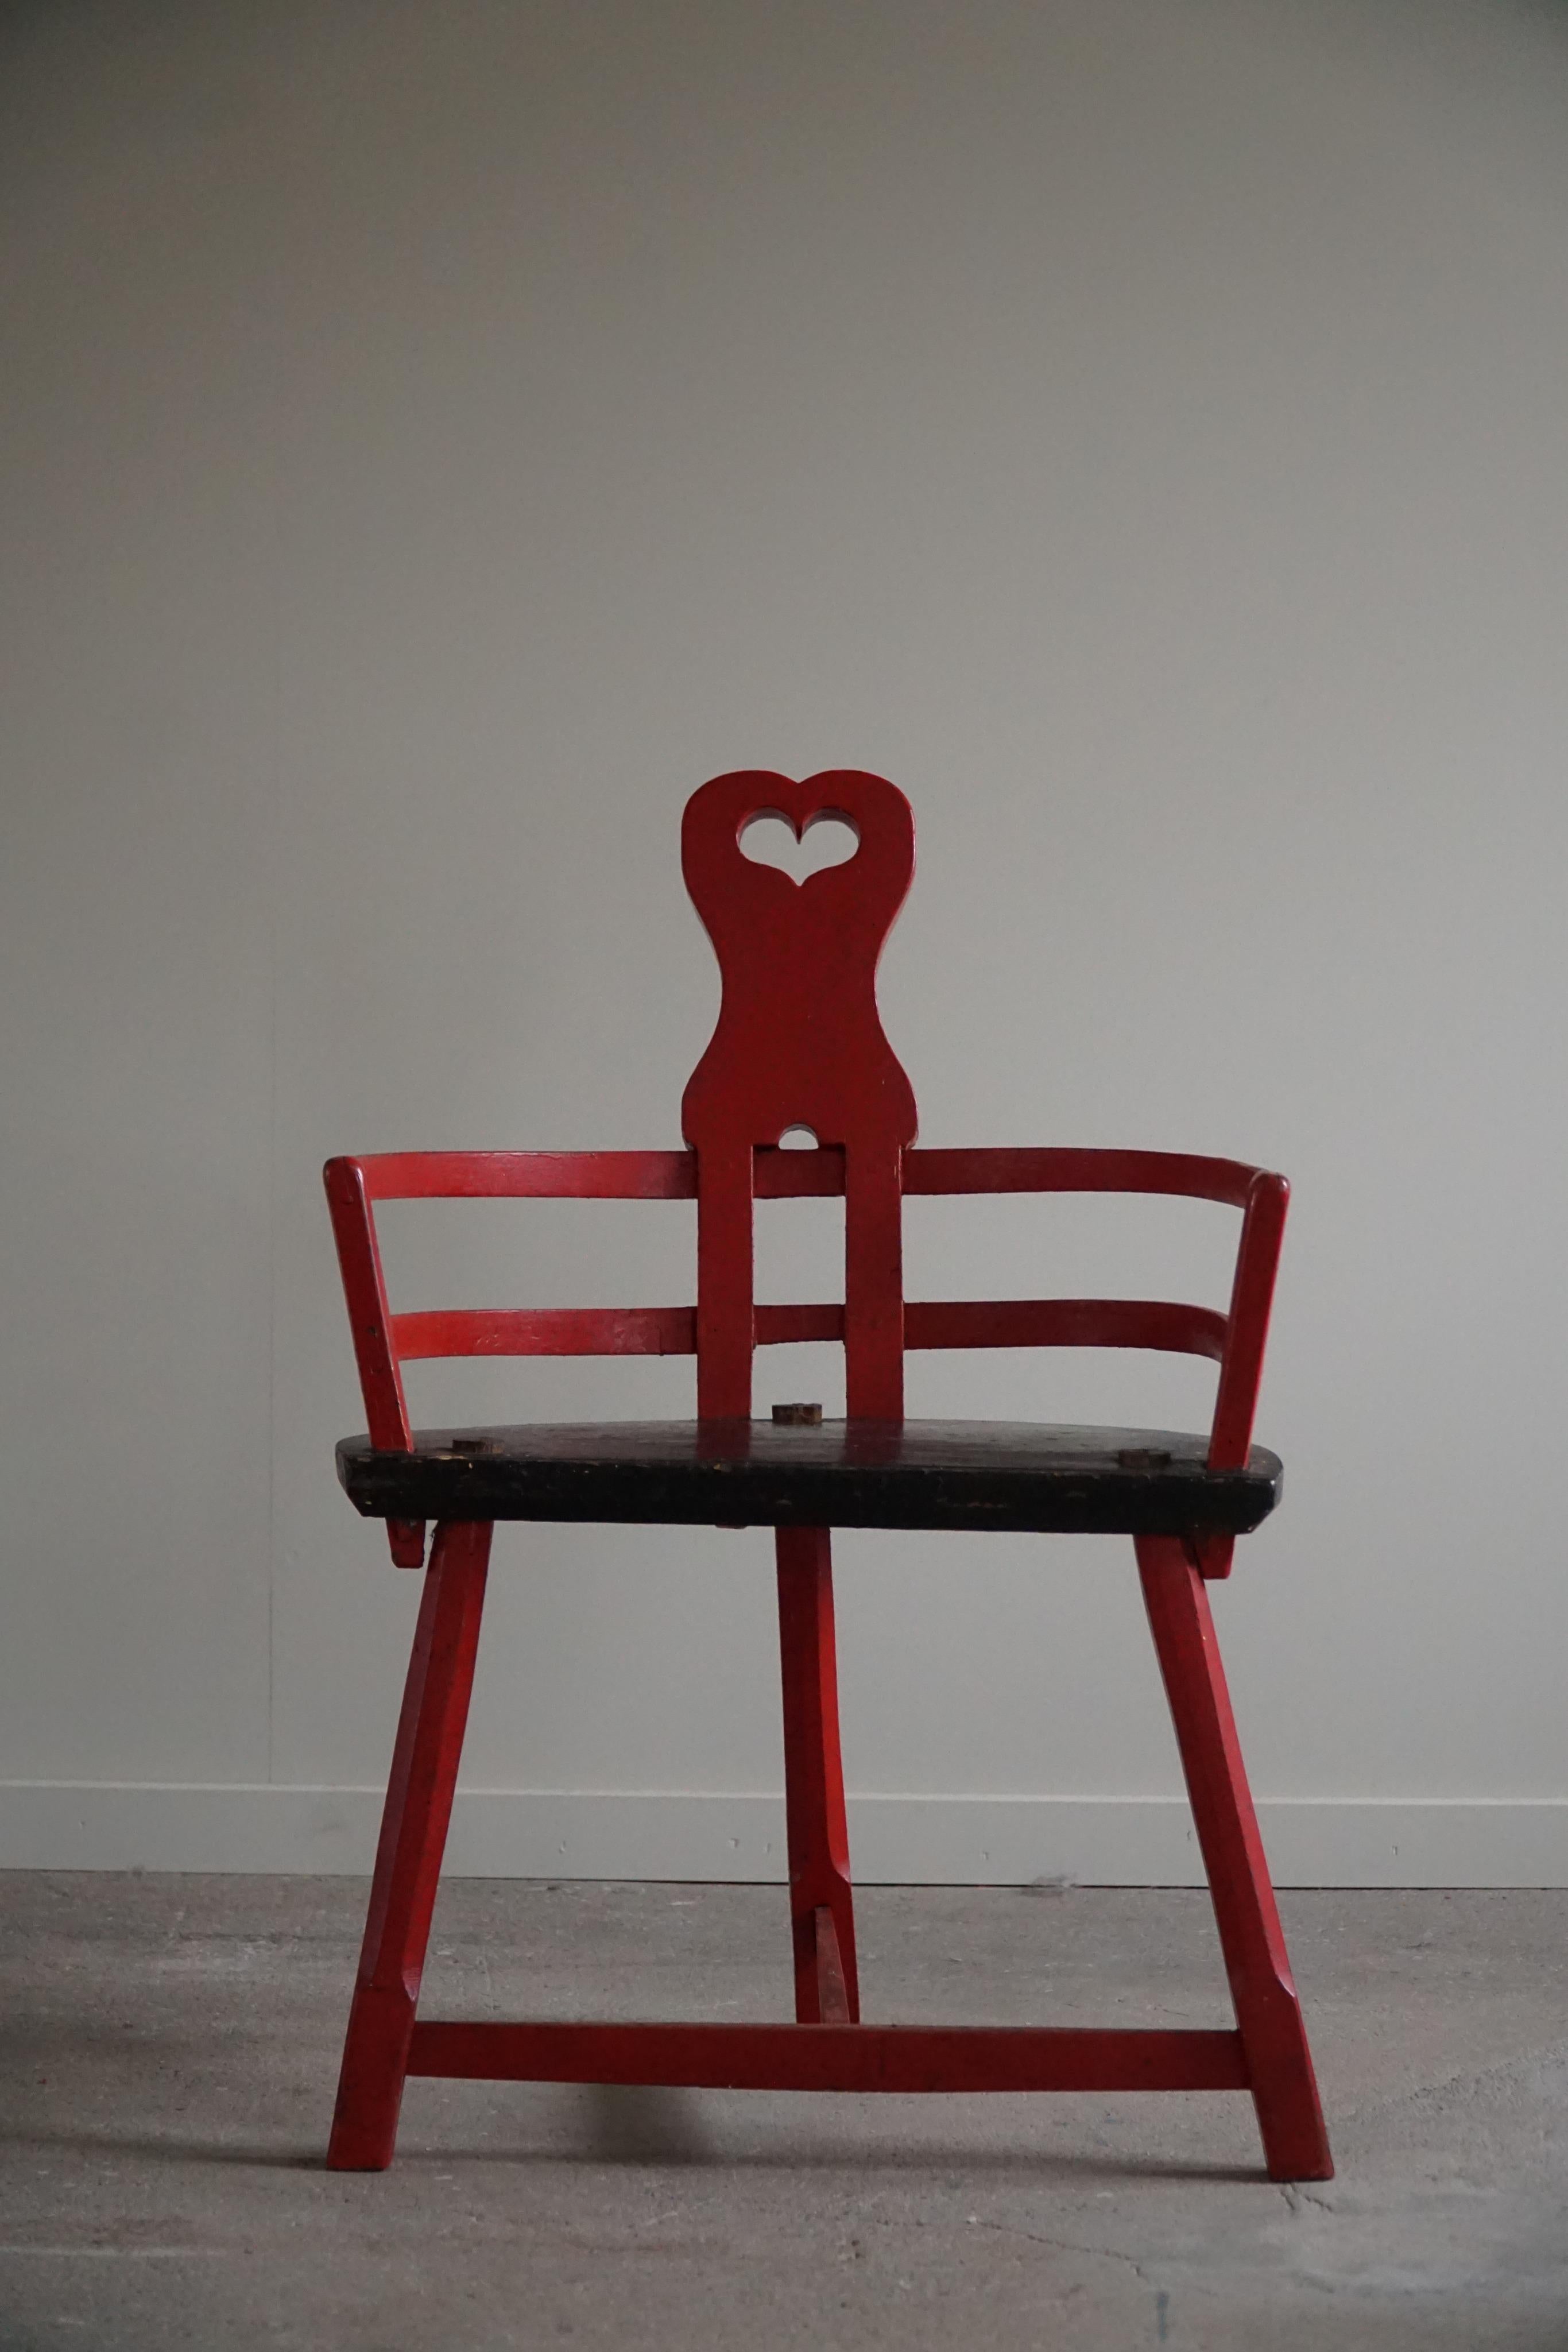 Ein so eleganter und dekorativer antiker Herzstuhl mit interessanten Formen. Ein seltenes Dekorationsobjekt aus Holz, rot bemalt und mit einem Herz in der Kopfstütze. Hergestellt von einem Tischler in Schweden um 1900-1920. Ein echtes